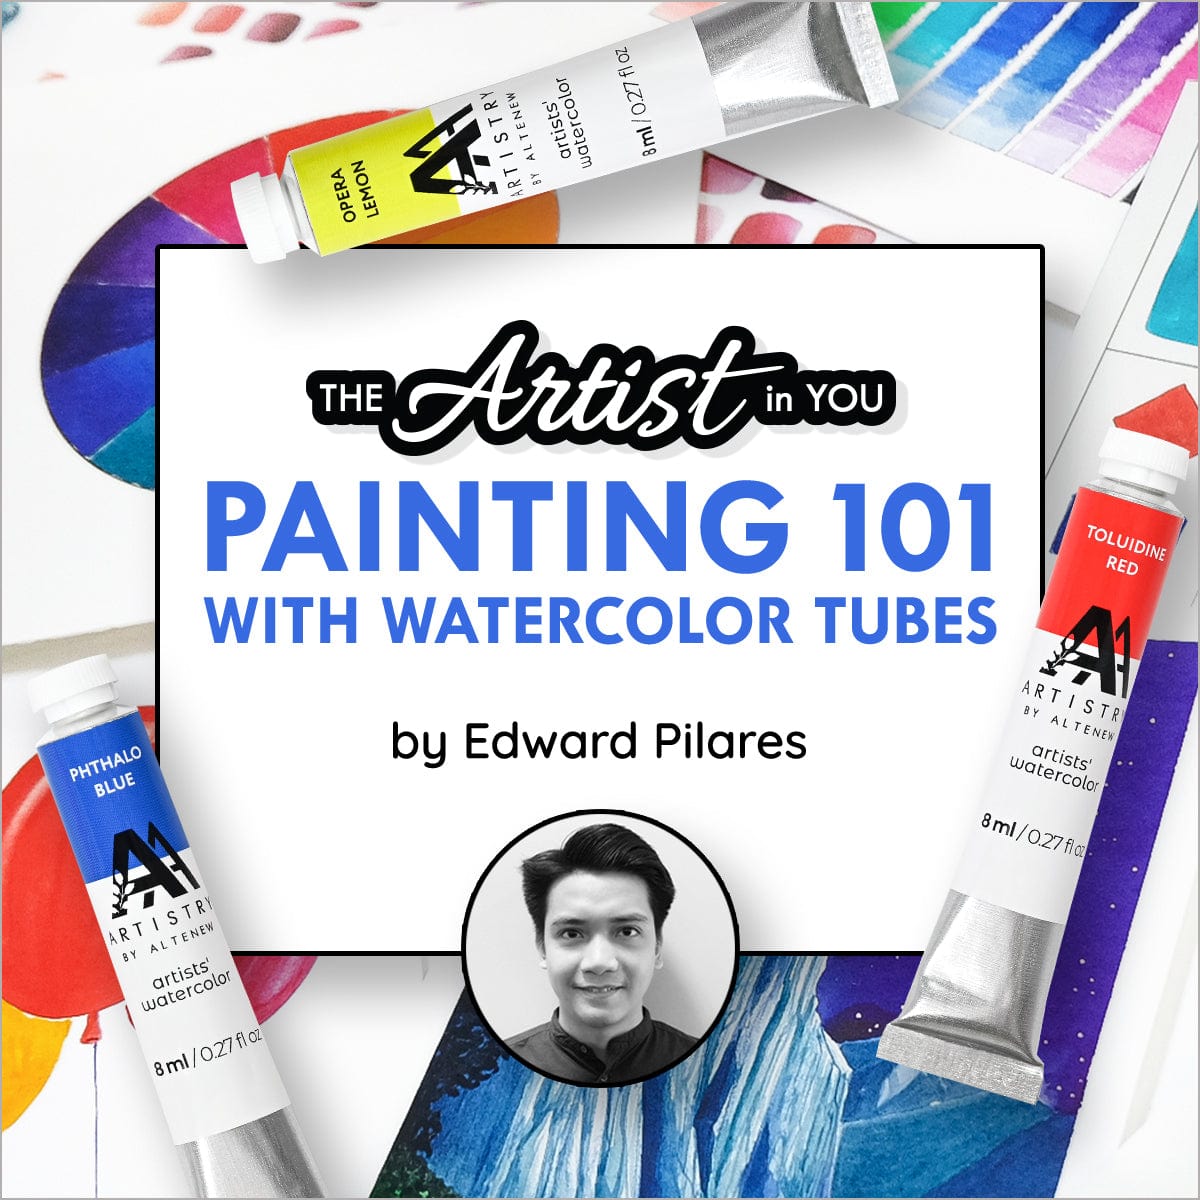 WATERCOLOR PAN VS TUBES - The Watercolor Story